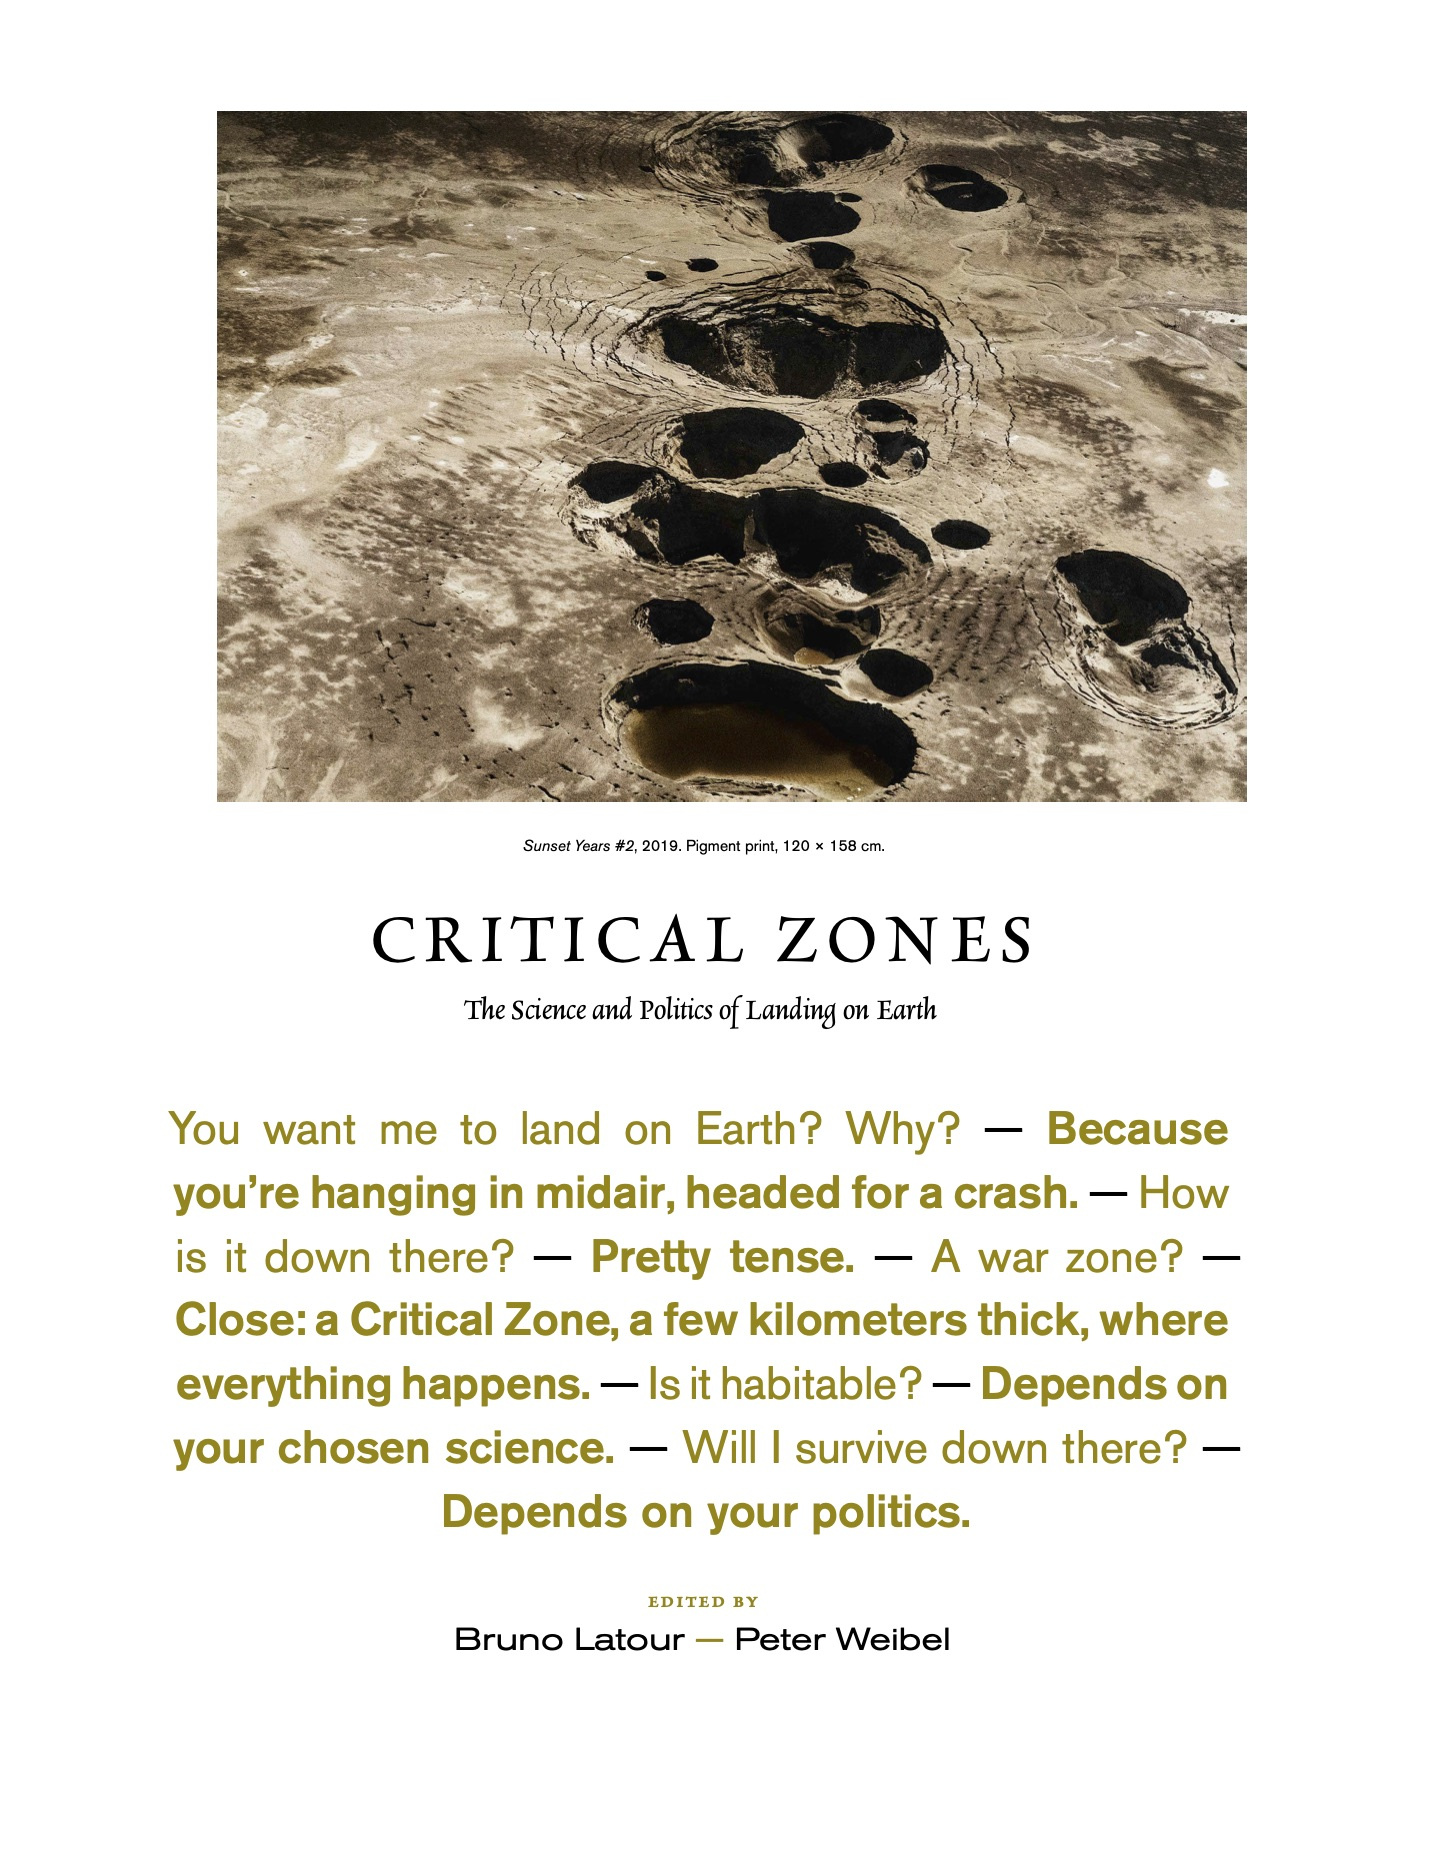 Zu sehen ist das Cover der Publikation zur Ausstellung Critical Zones. Es zeigt ein Bild von einer von Kratern geprägten Landschaft. Untendrunter ist ein kurzer Dialog zu lesen, wie es ist auf der Erde zu landen.